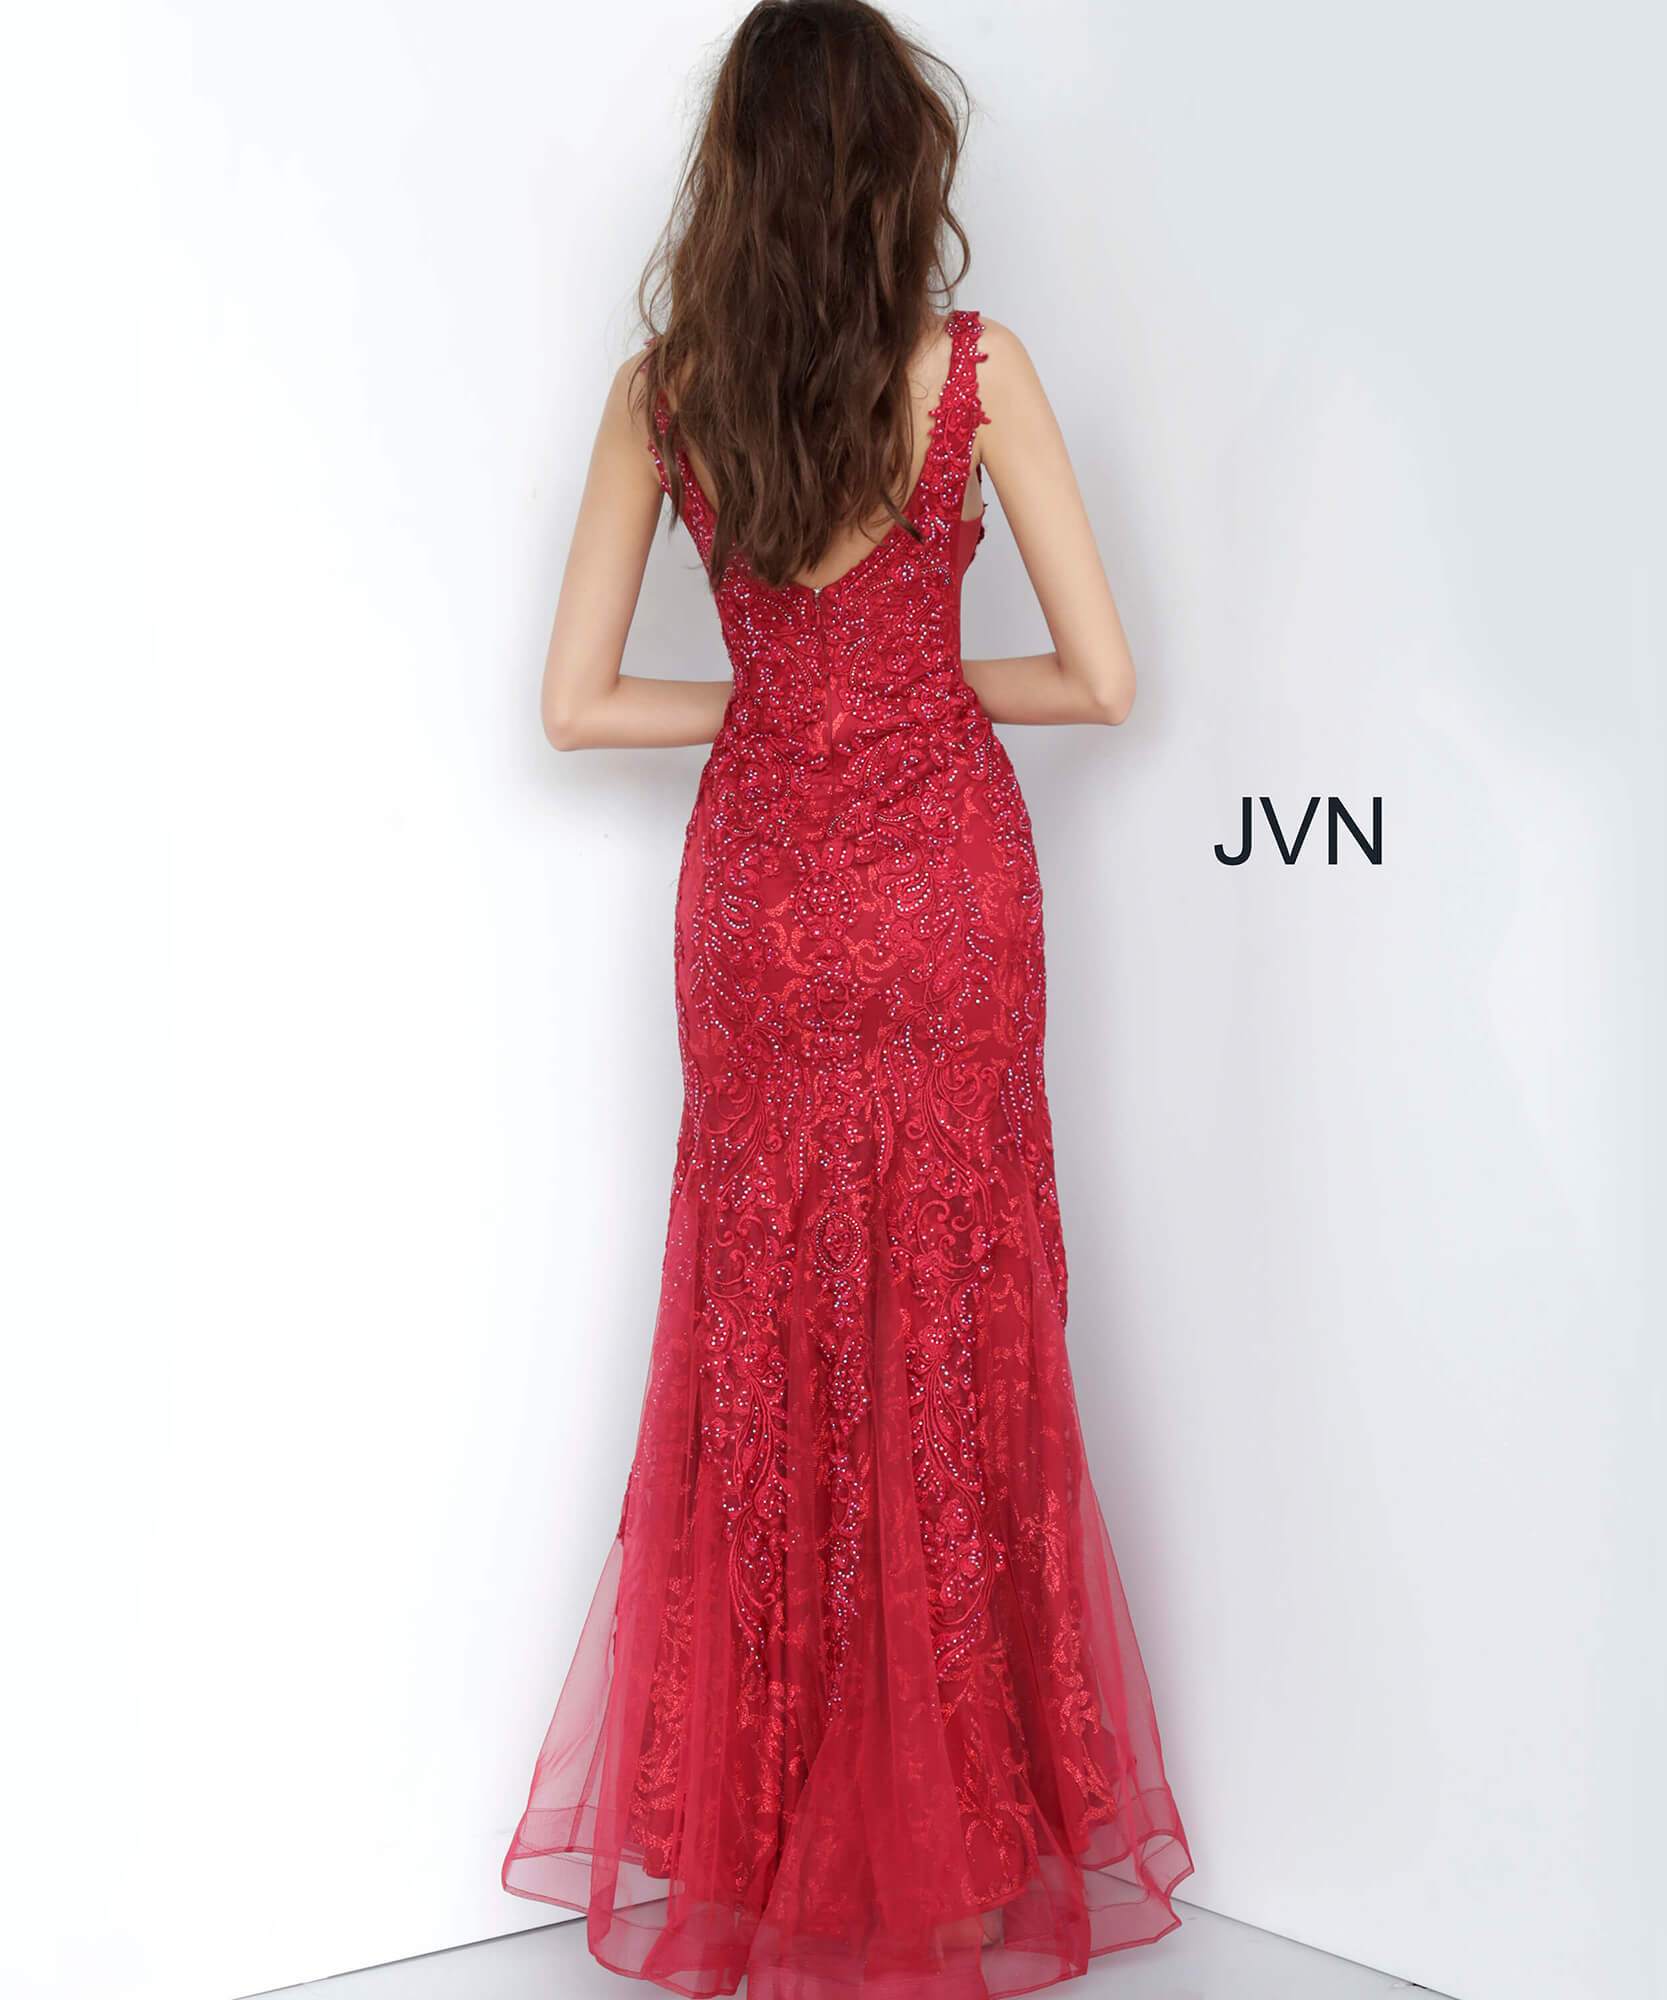 Jvn02319 Dress Red Sweetheart Neckline Lace Prom Dress